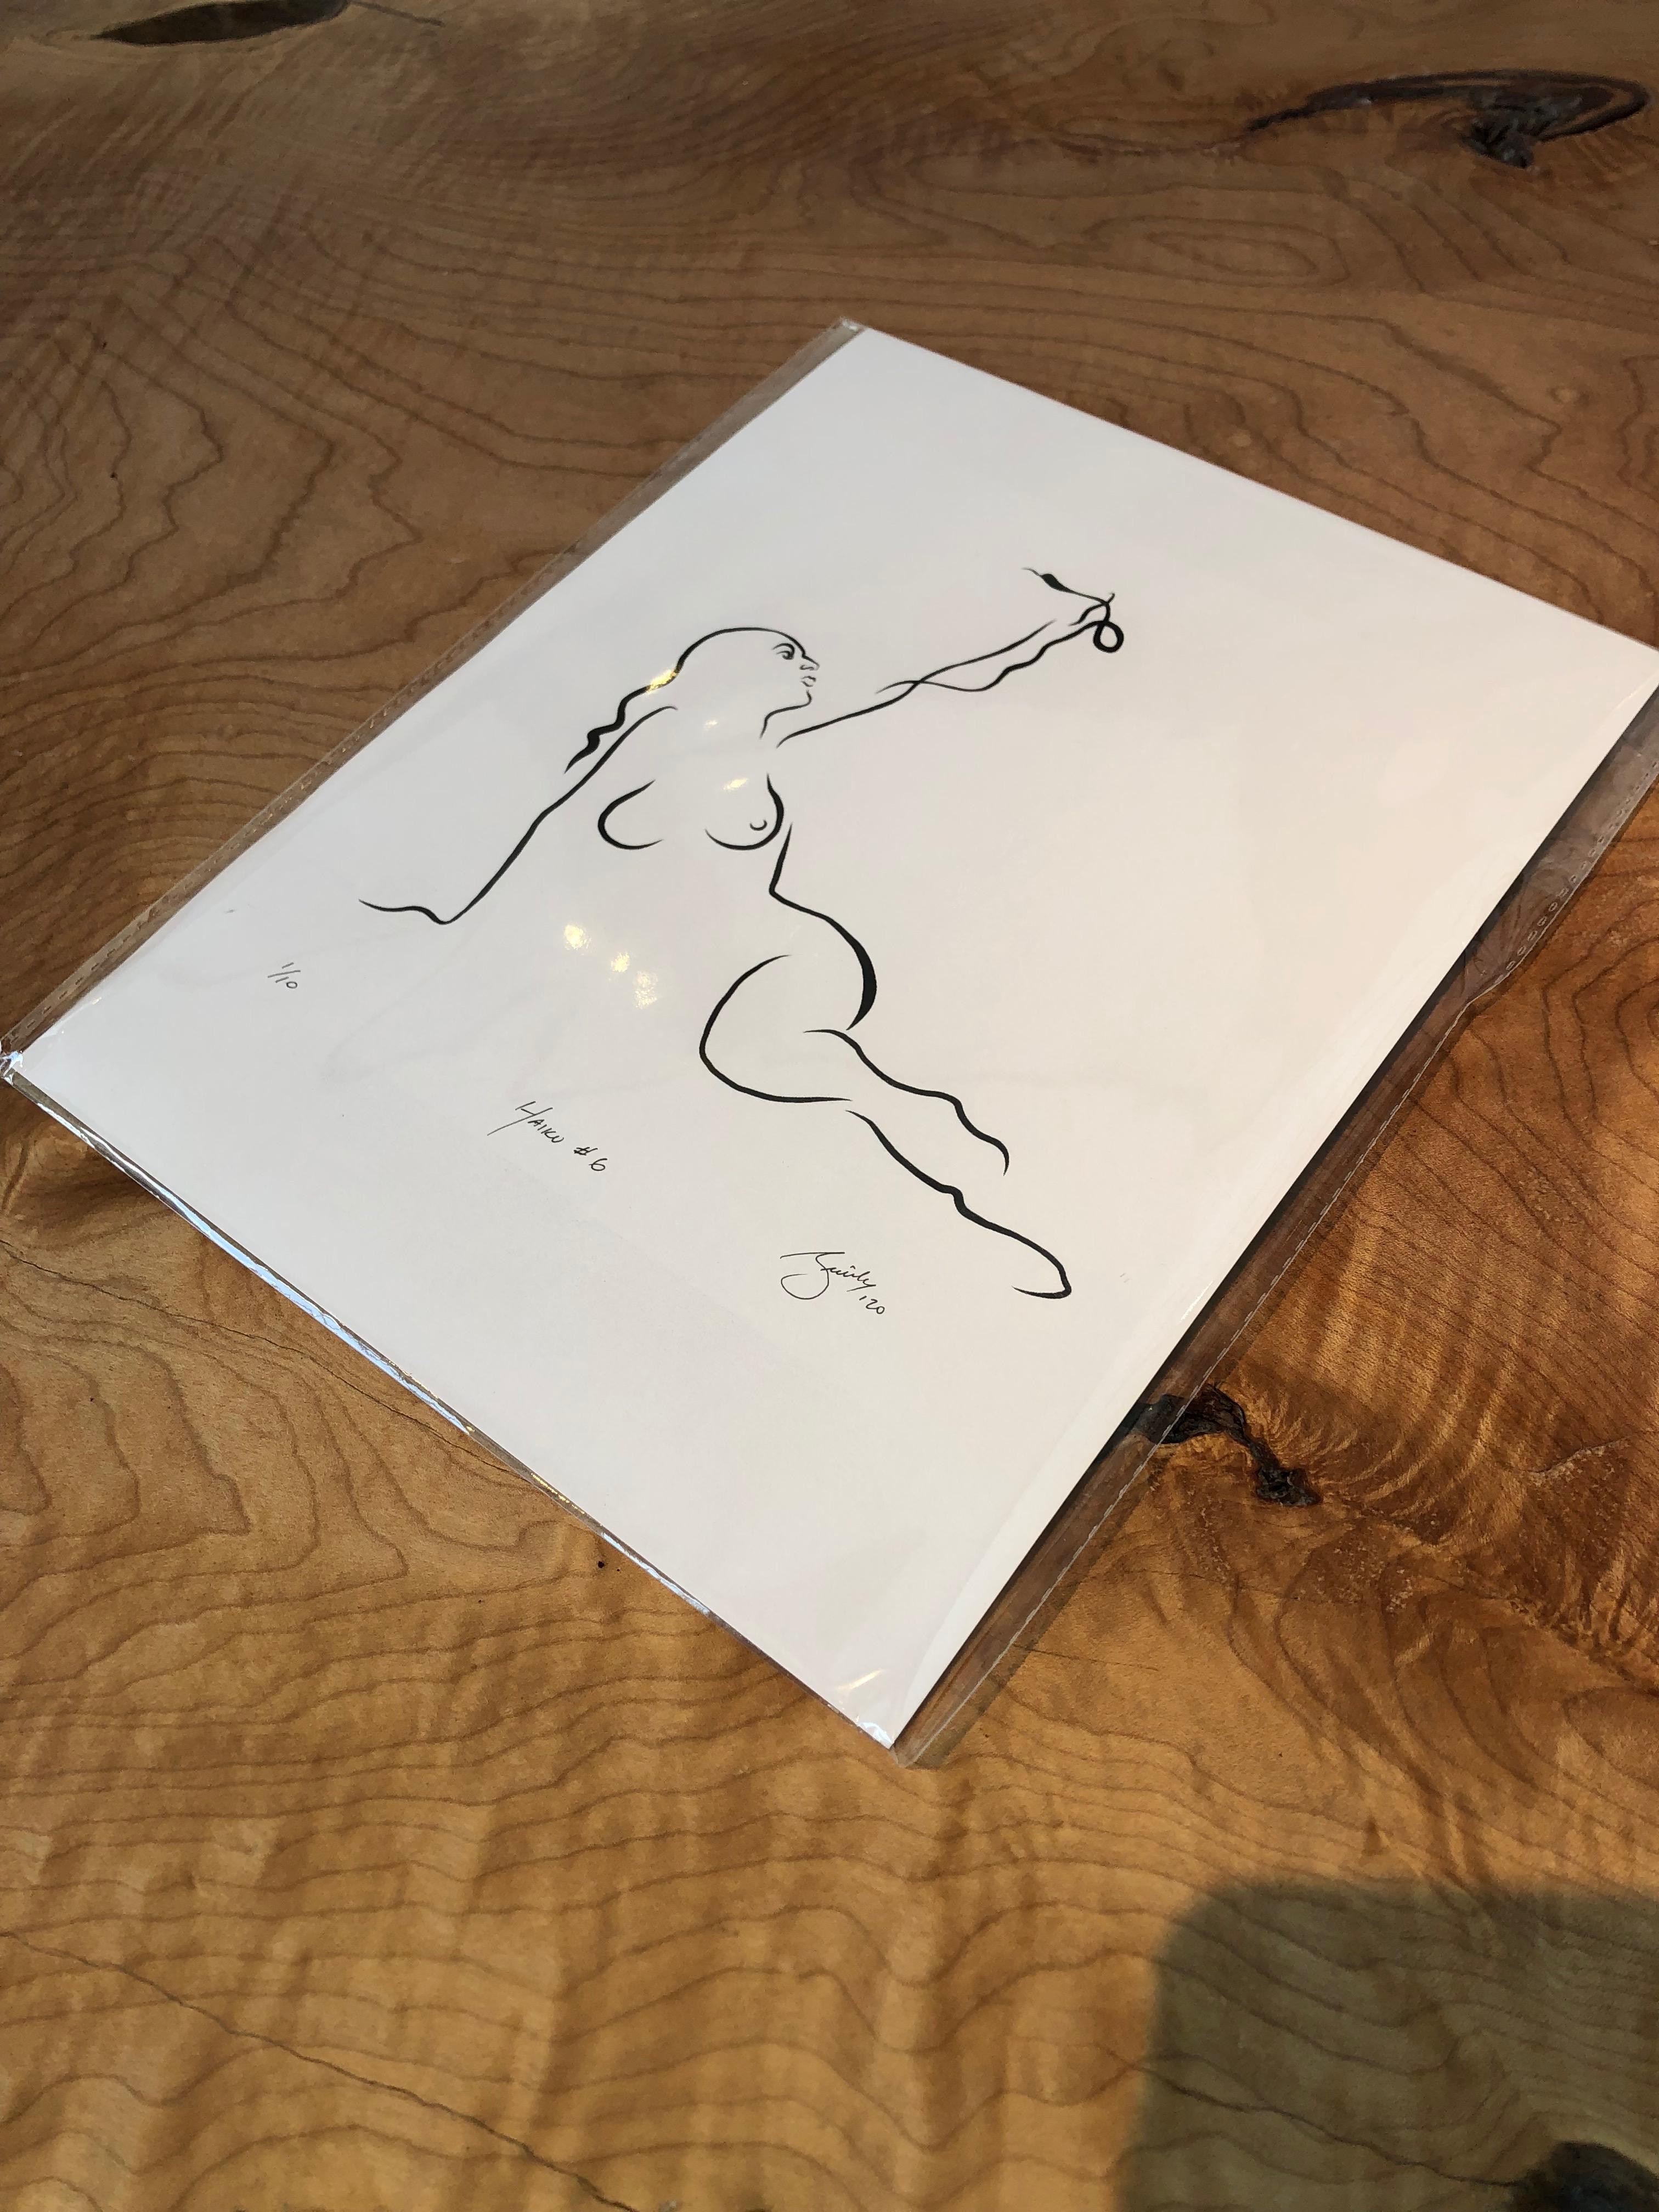 Haiku #6, 1/50, Haiku  Digital Vector B&W Zeichnung weiblicher Akt-Frauenfigur mit Schlange, Digital Vector B&W – Print von Michael Binkley